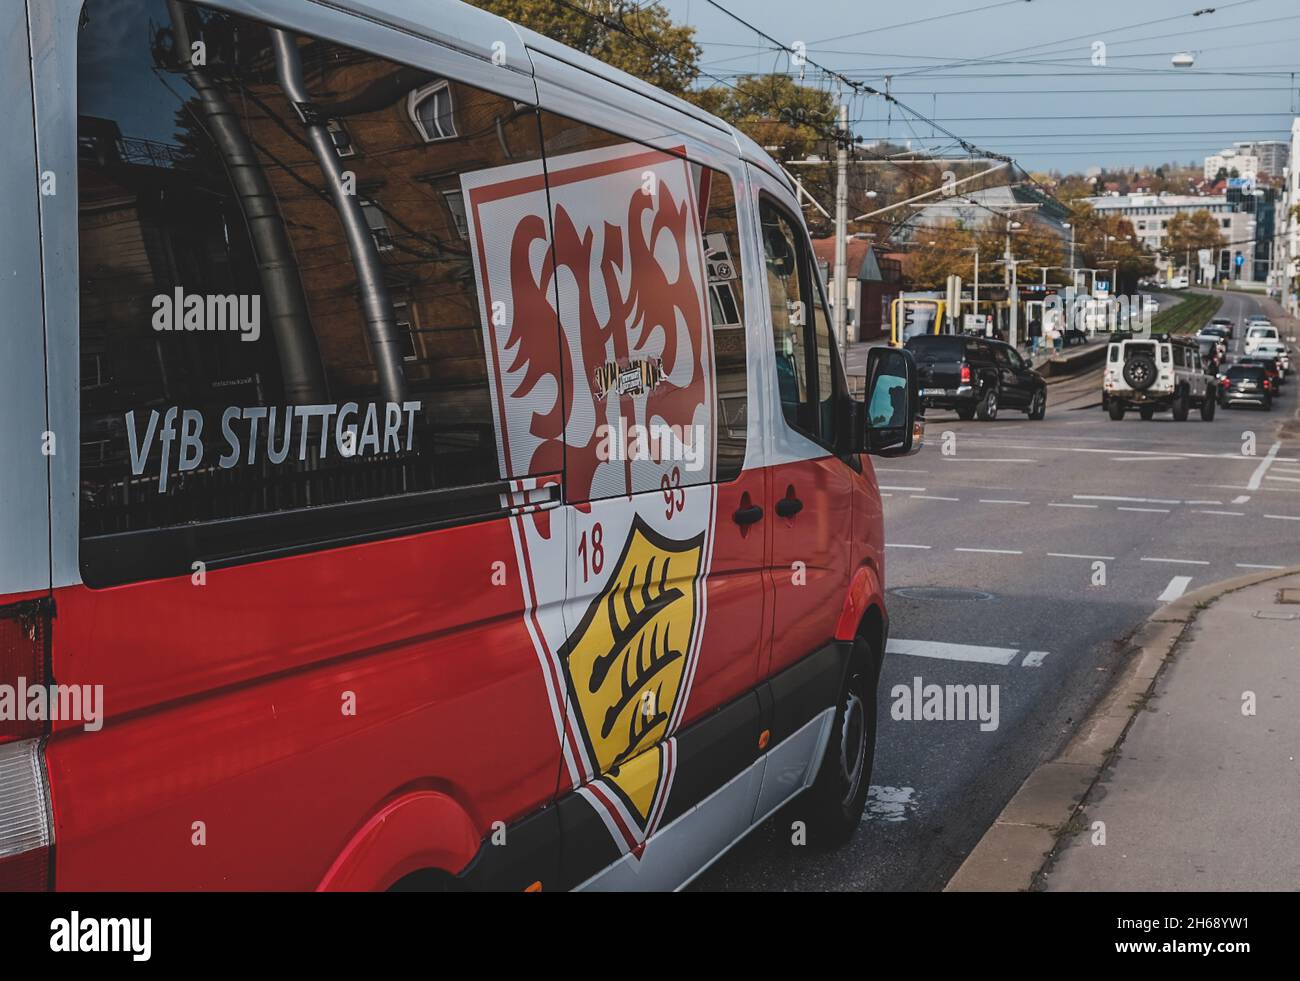 STUTTGART BAD CANNSTATT, GERMANIA - 01 novembre 2021: Il VfB Stuttgart Soccer fan bus sulla strada a Bad Cannstatt, Germania Foto Stock